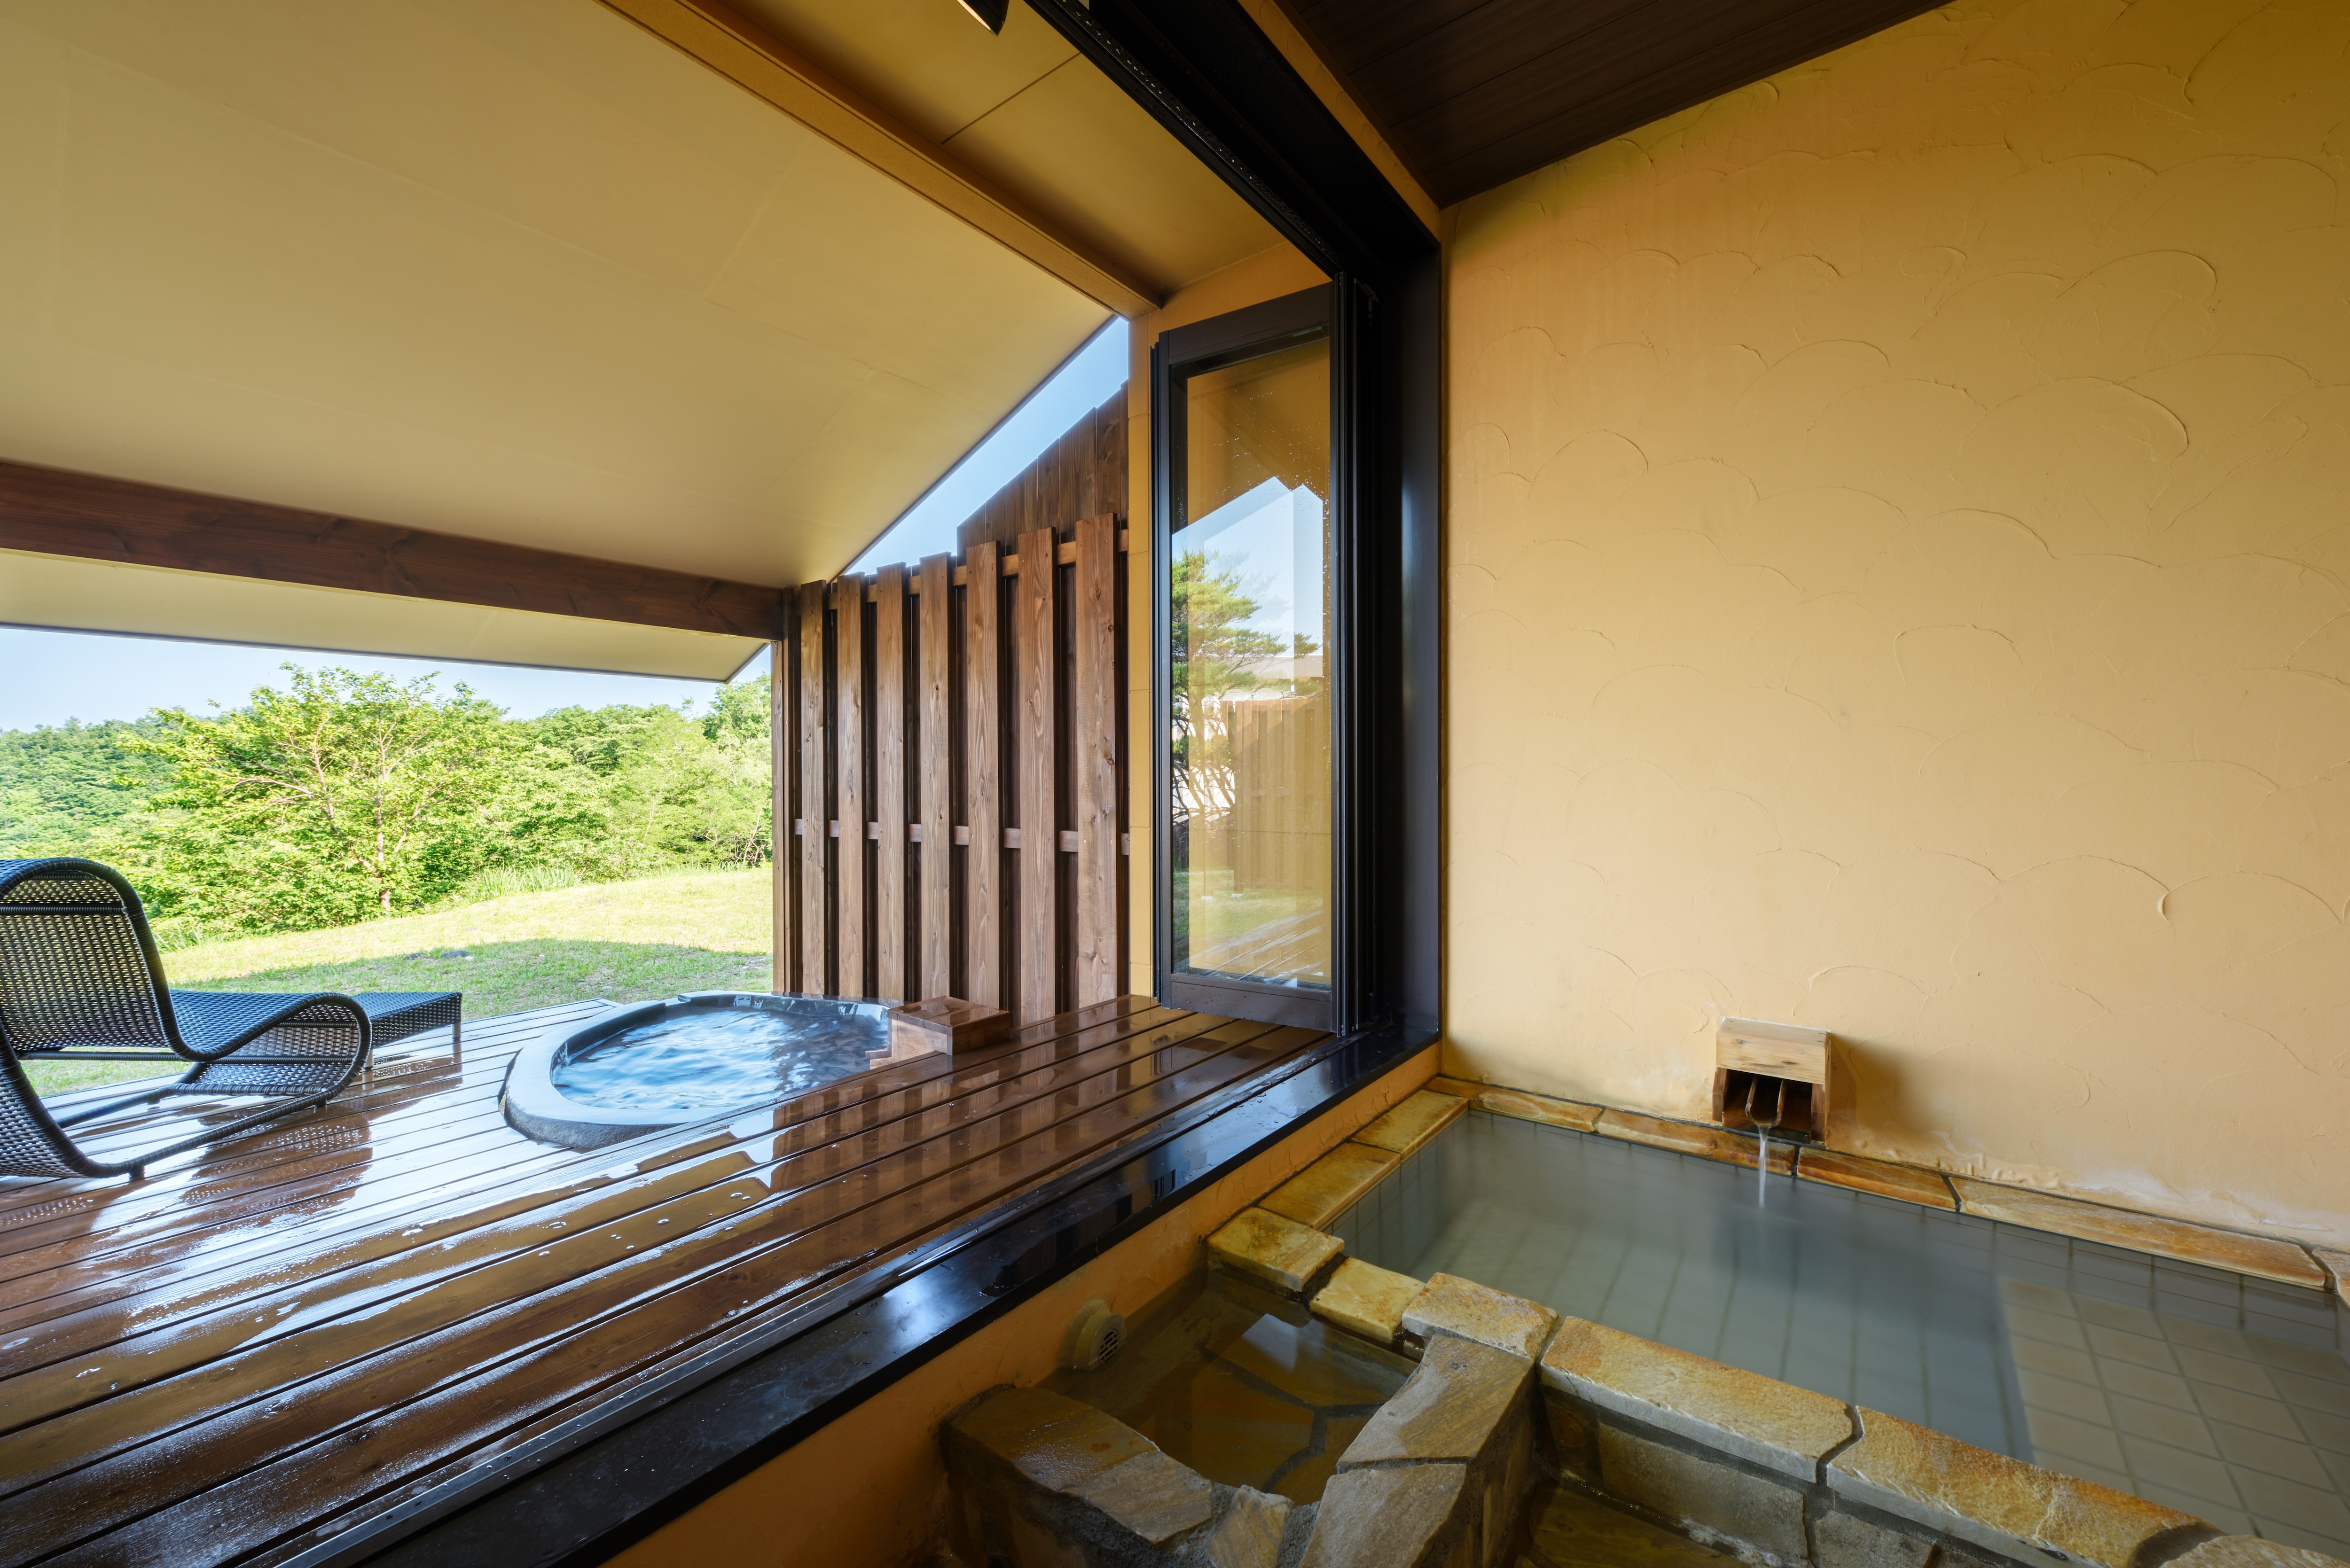 Motoisago guest room open-air